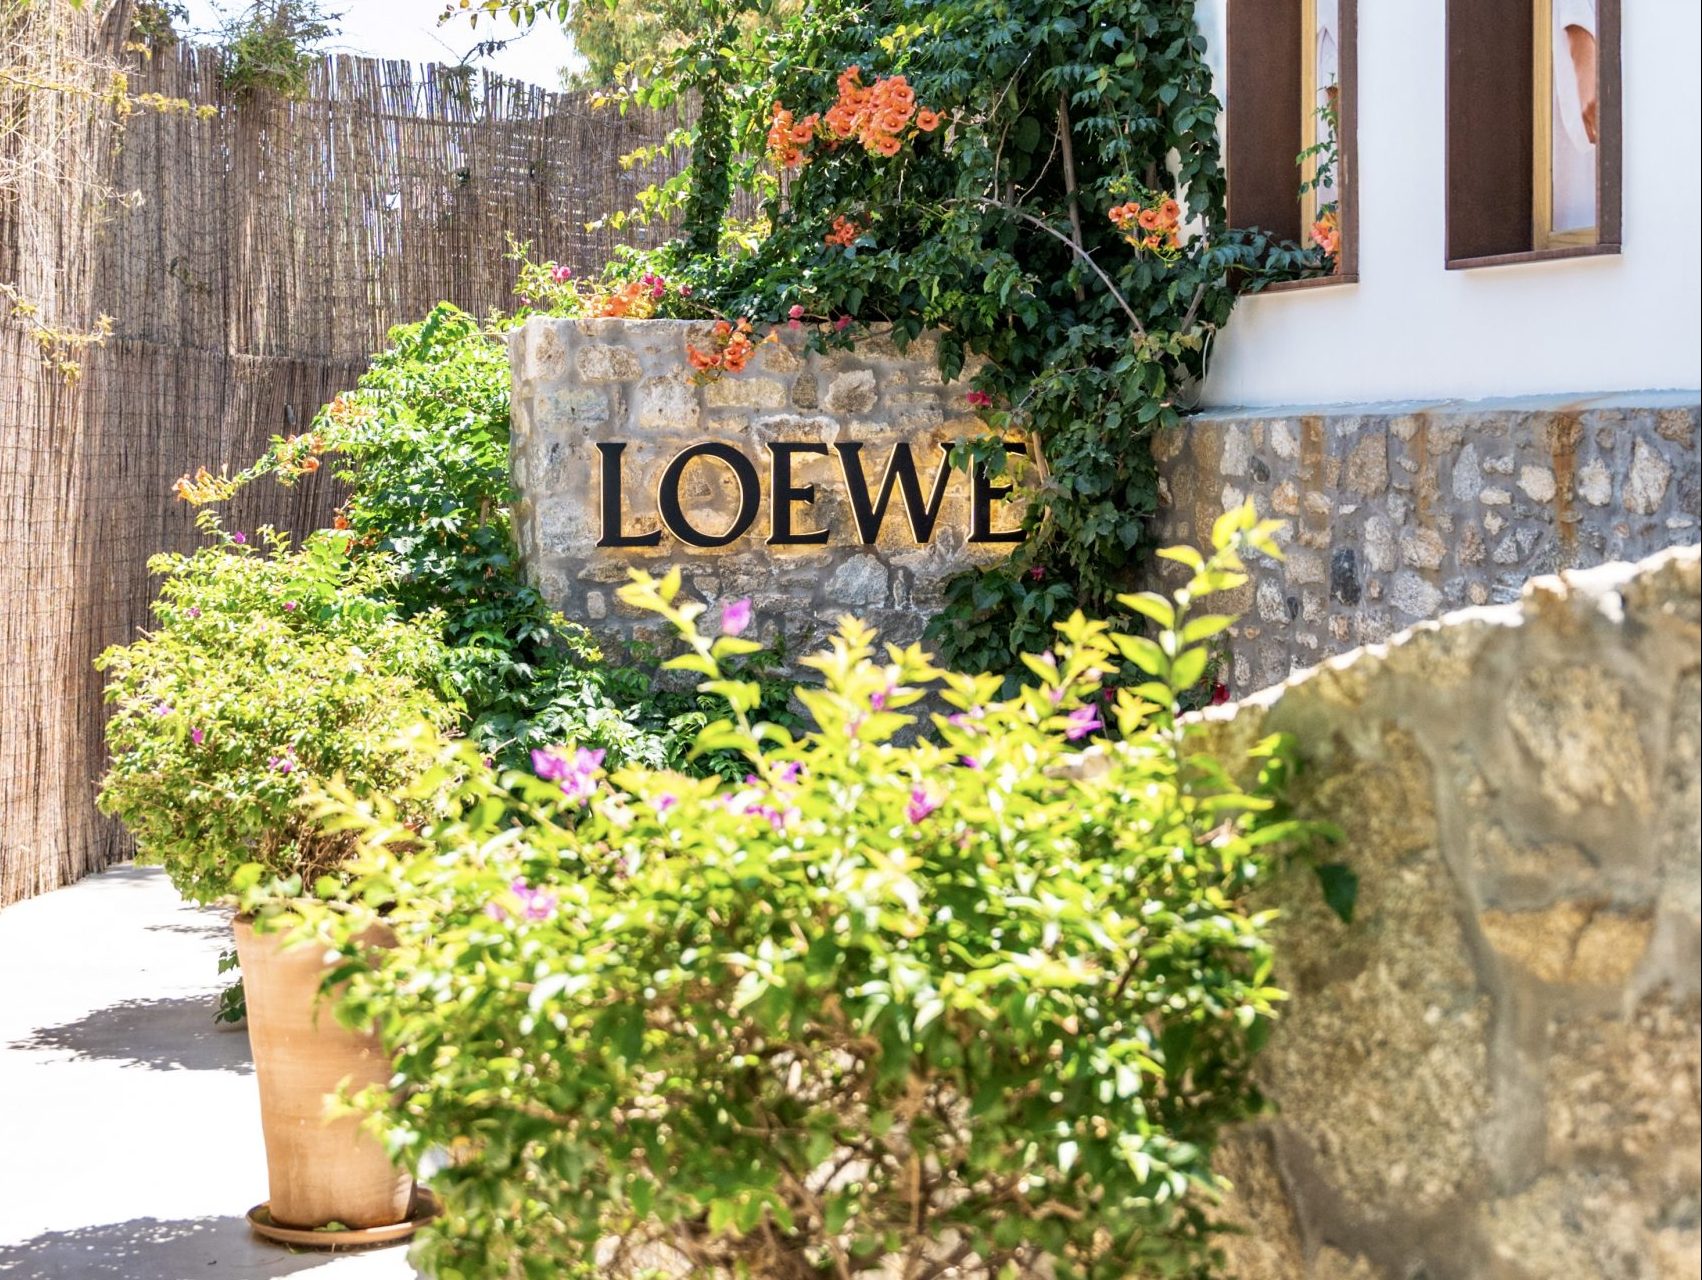 Ο Οίκος Loewe και η οικογένεια Λιακωτίτη υποδέχονται το νέο Loewe Store στη Μύκονο